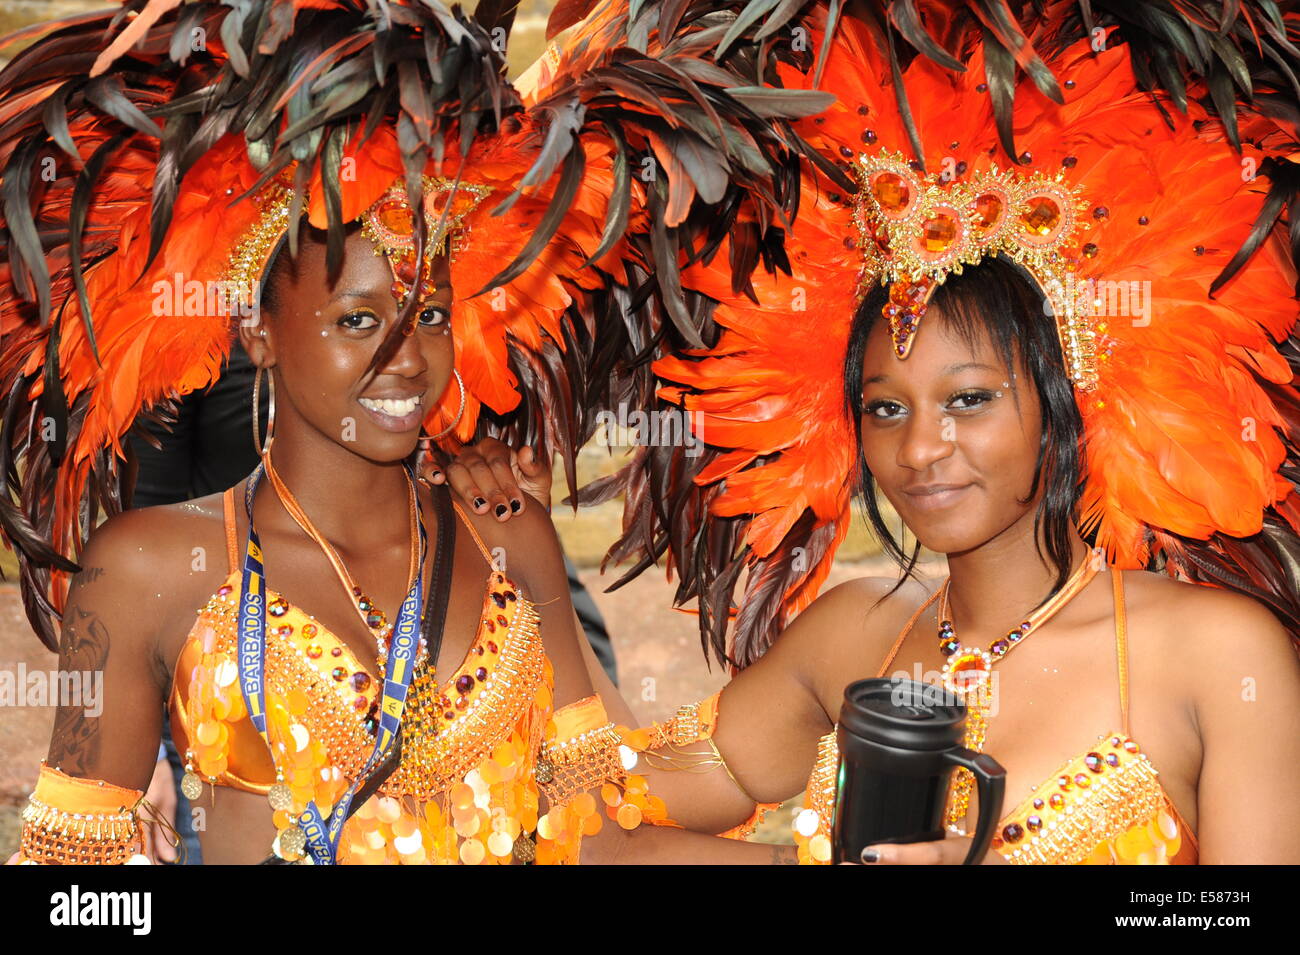 Festival de Notting Hill deux femmes portant des tenues traditionnelles du festival des Caraïbes Banque D'Images